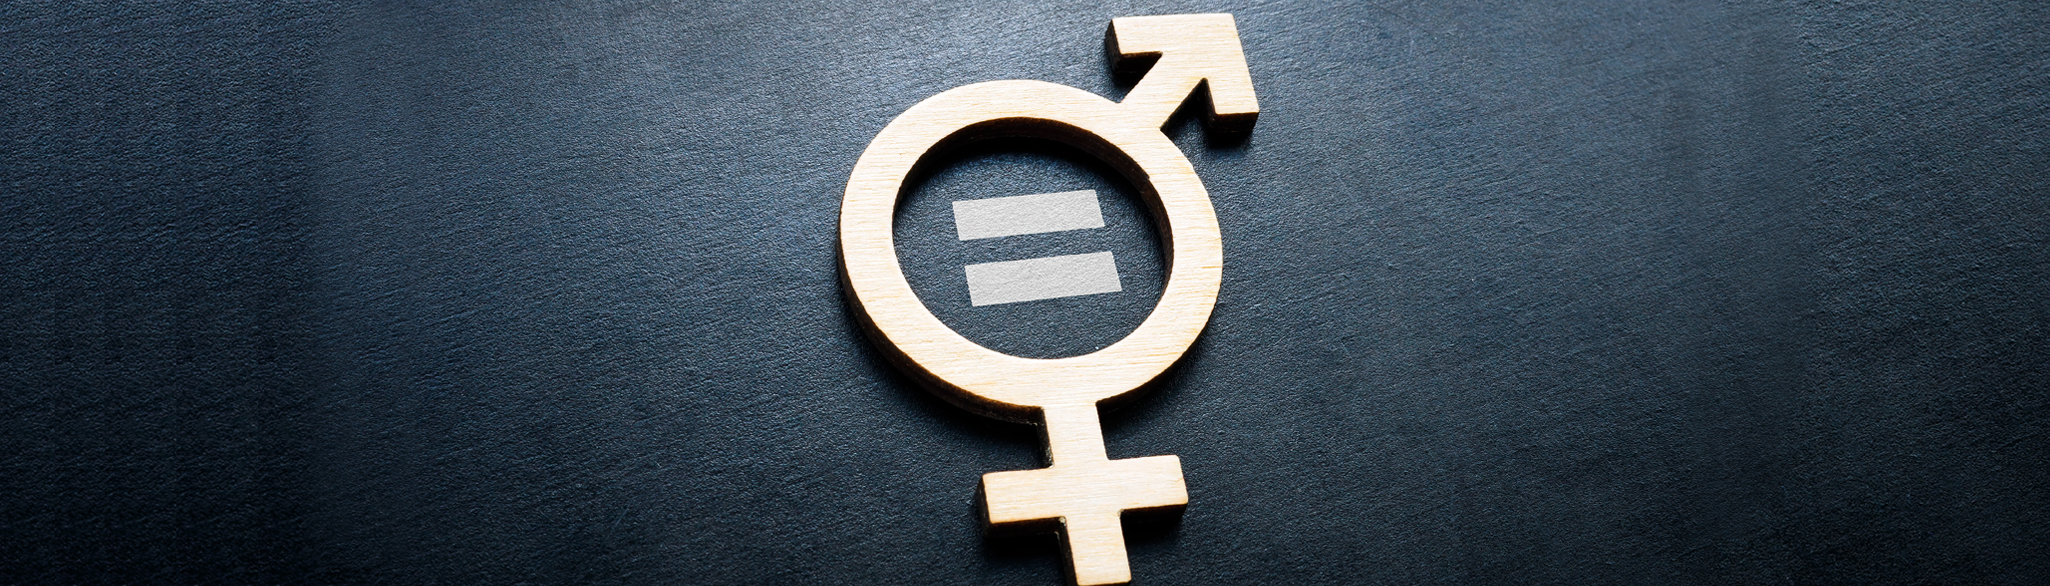 Symbolen för kvinnor ihopsatt med symbolen för män.